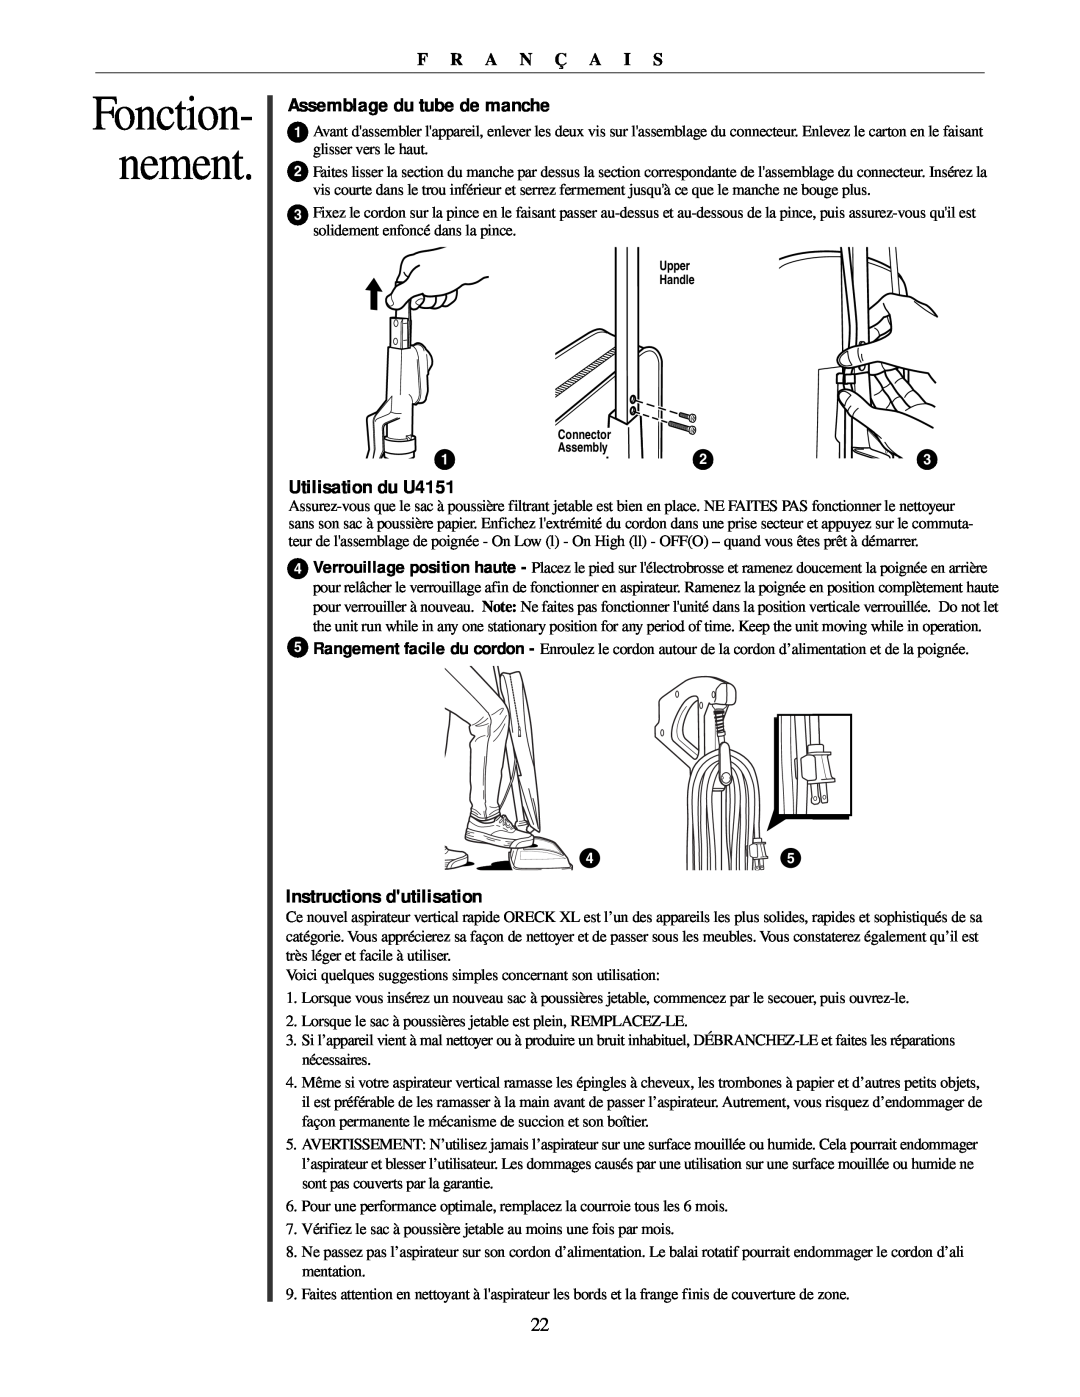 Oreck Assemblage du tube de manche, Utilisation du U4151, Instructions dutilisation, Fonction- nement, F R A N Ç A I S 